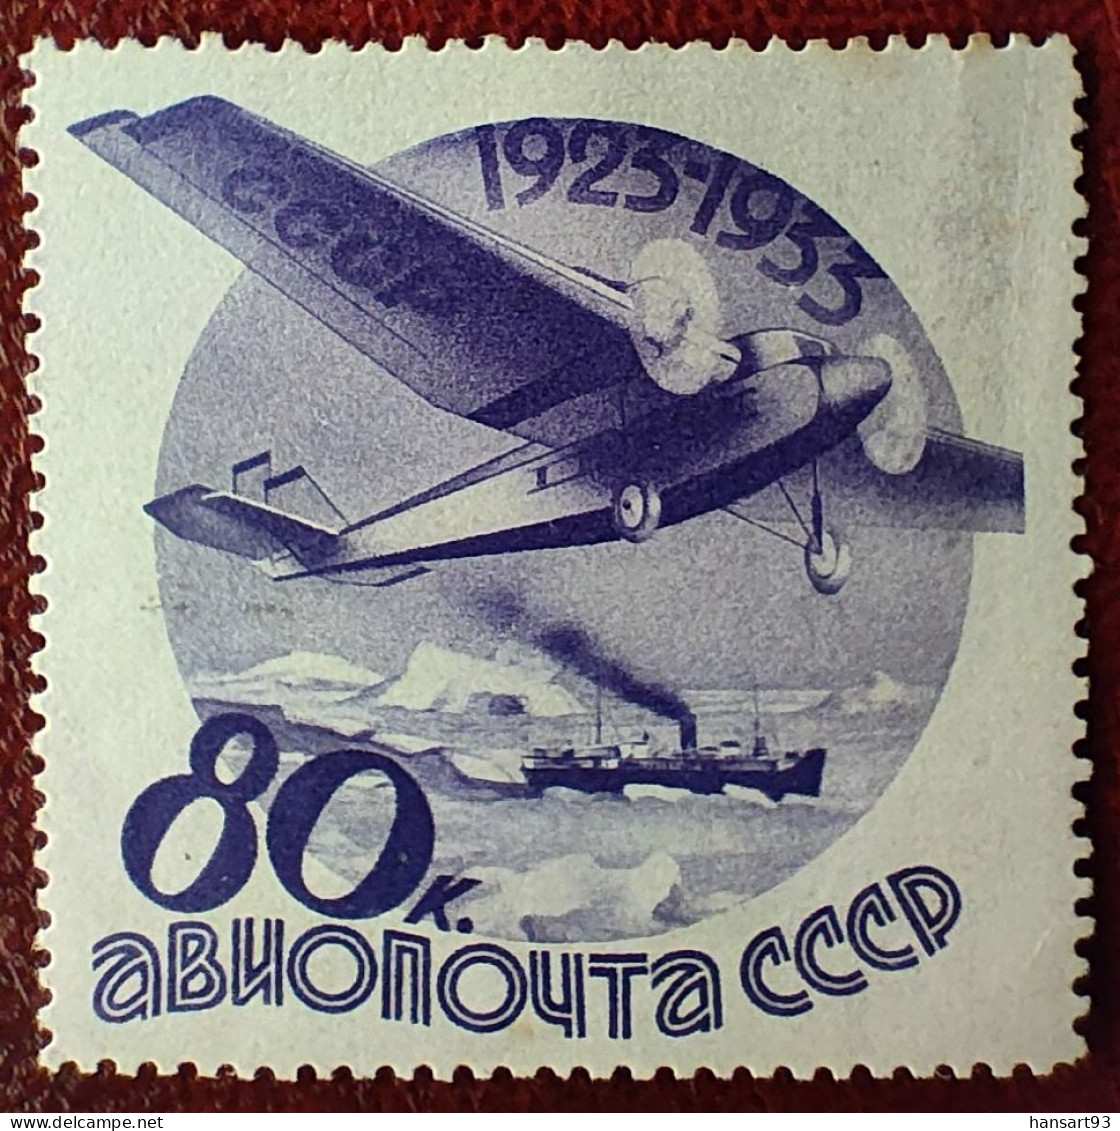 URSS Rare Poste Aérienne N° 45 N* TTB ! Cote 2020 : 50,00 Euros ! A Voir Absolument !! - Neufs